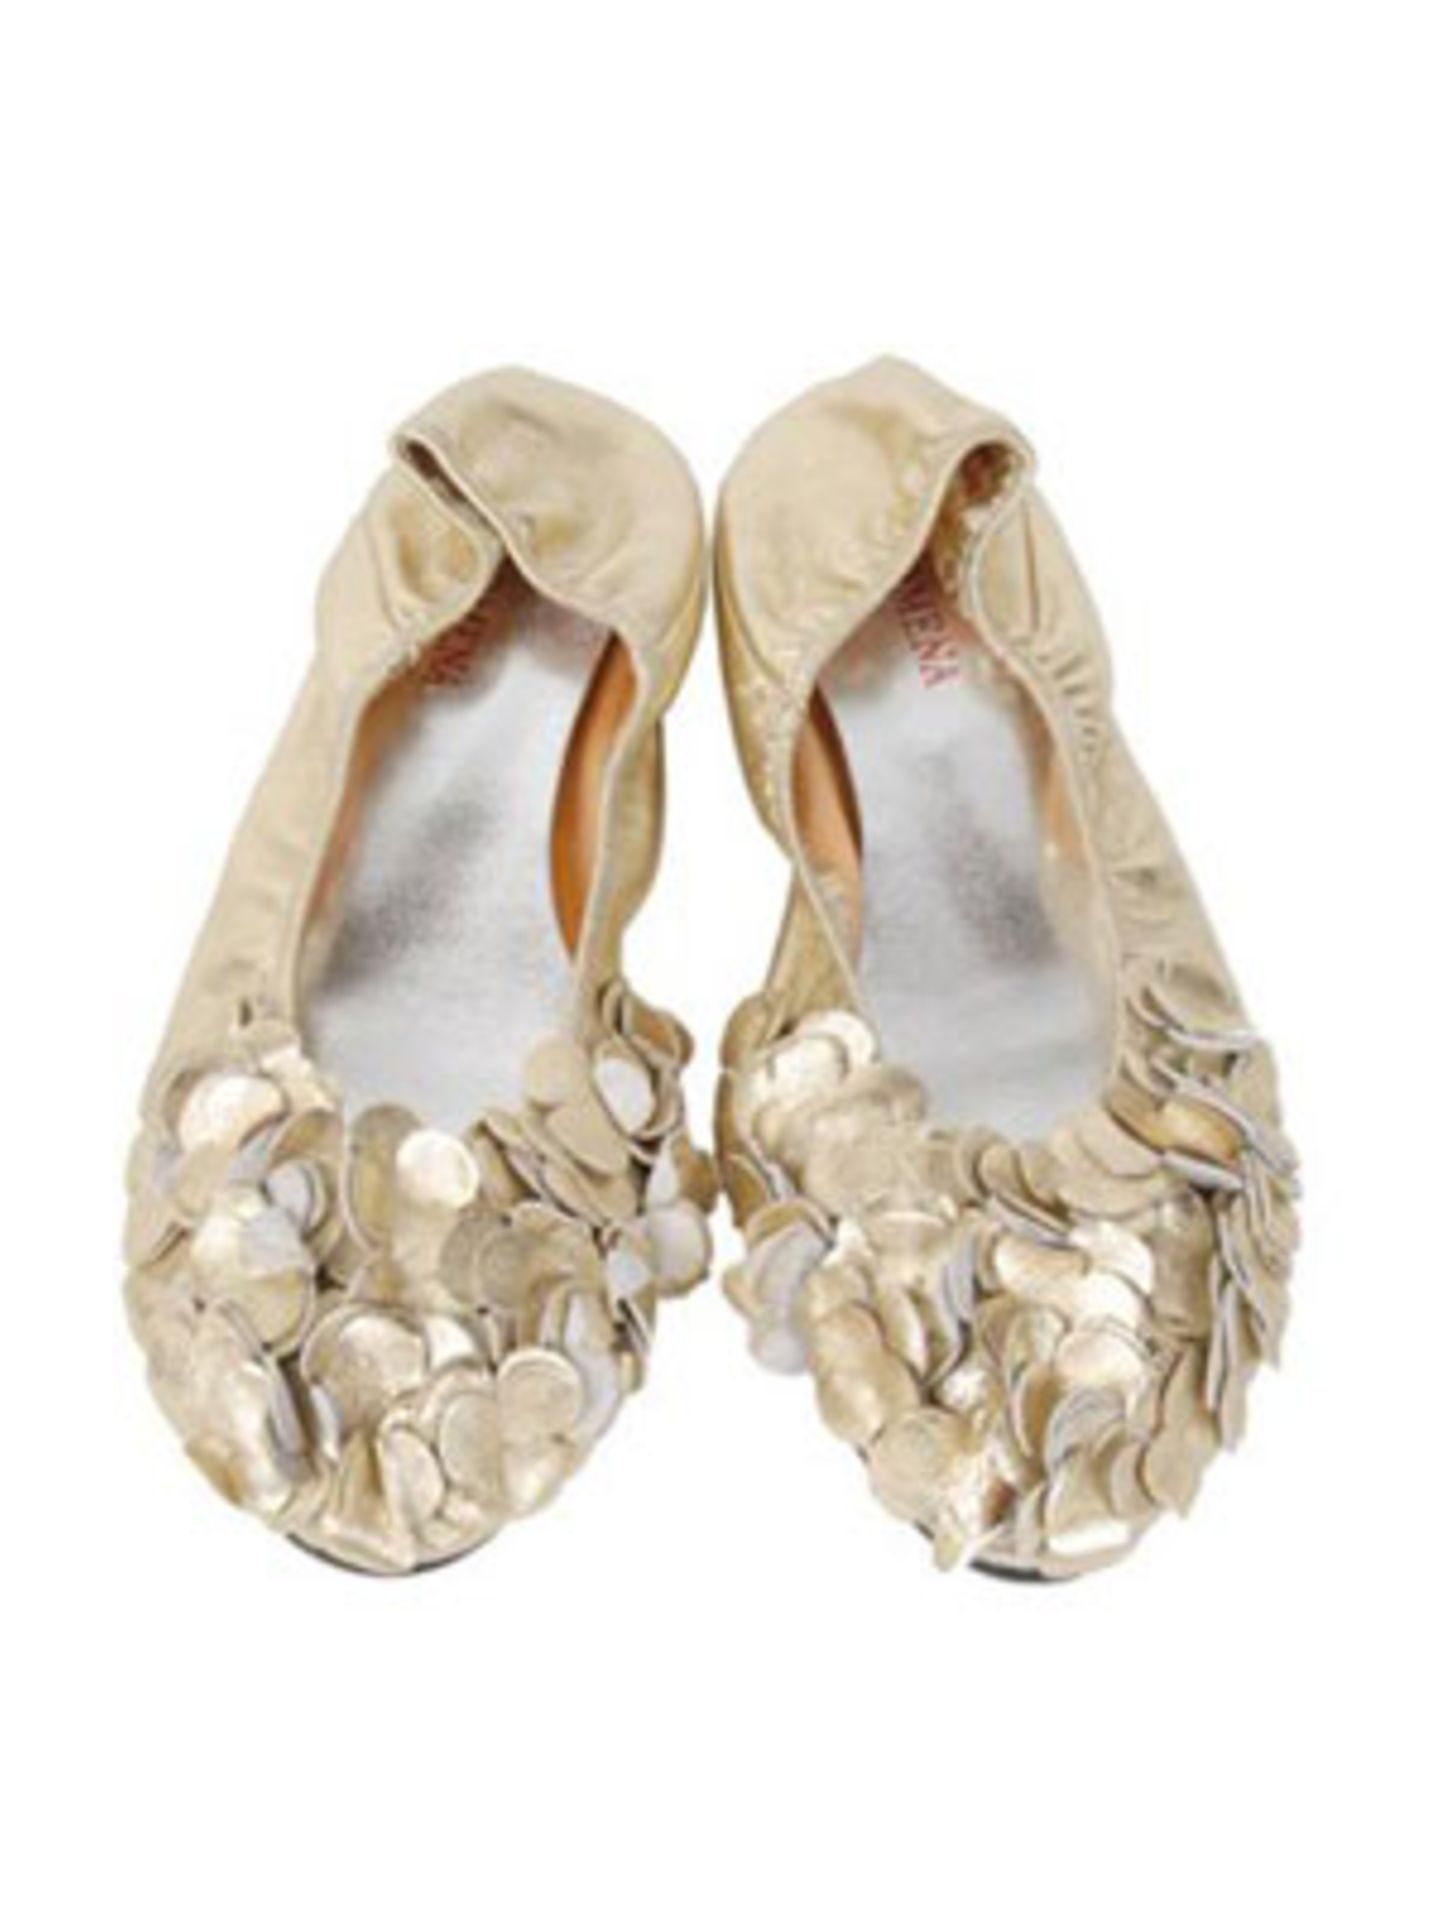 Ballerina-Slippers mit opulenter Applikation in Gold vorne von www.pretaportobello.com, um 86 Euro.